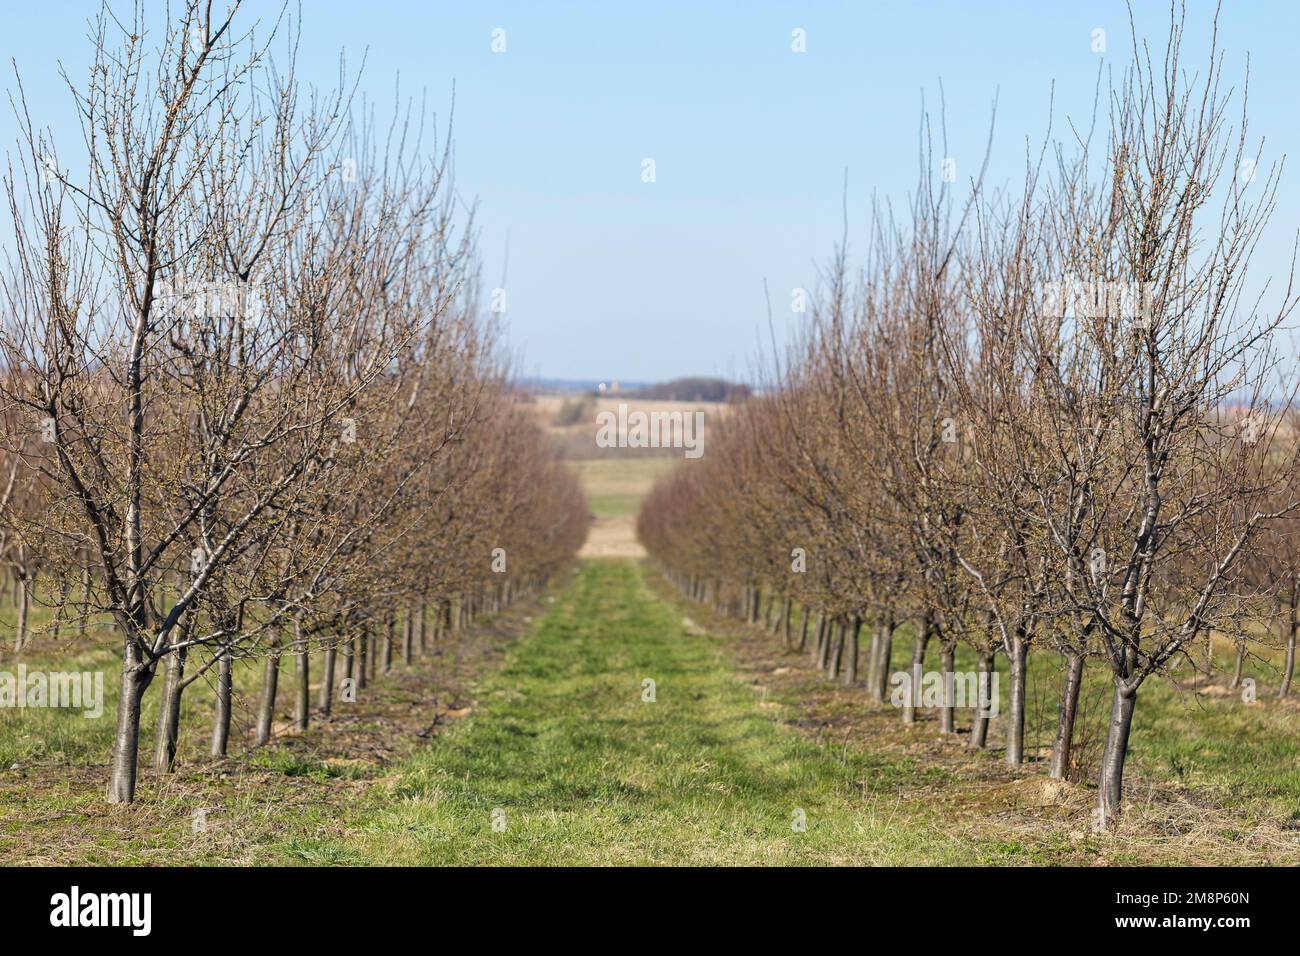 Jardin de prunes au début du printemps avant la floraison. Des rangées de pruniers dans un verger moderne. Agriculture. Des rangées de pruniers poussent. Banque D'Images